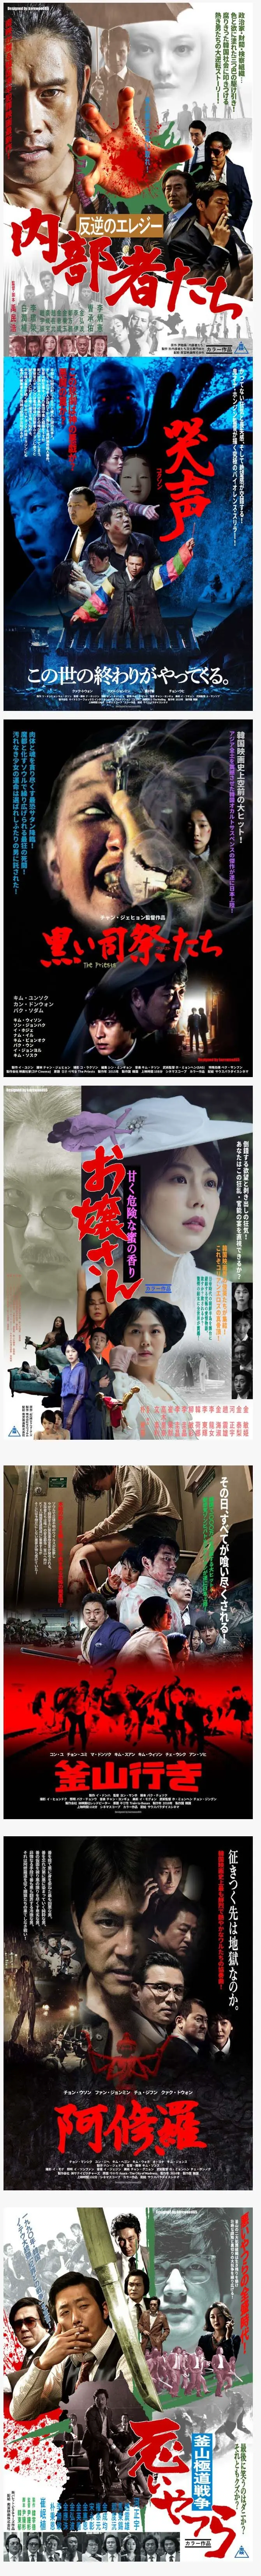 일본인이 만든 영화 포스터 | mbong.kr 엠봉